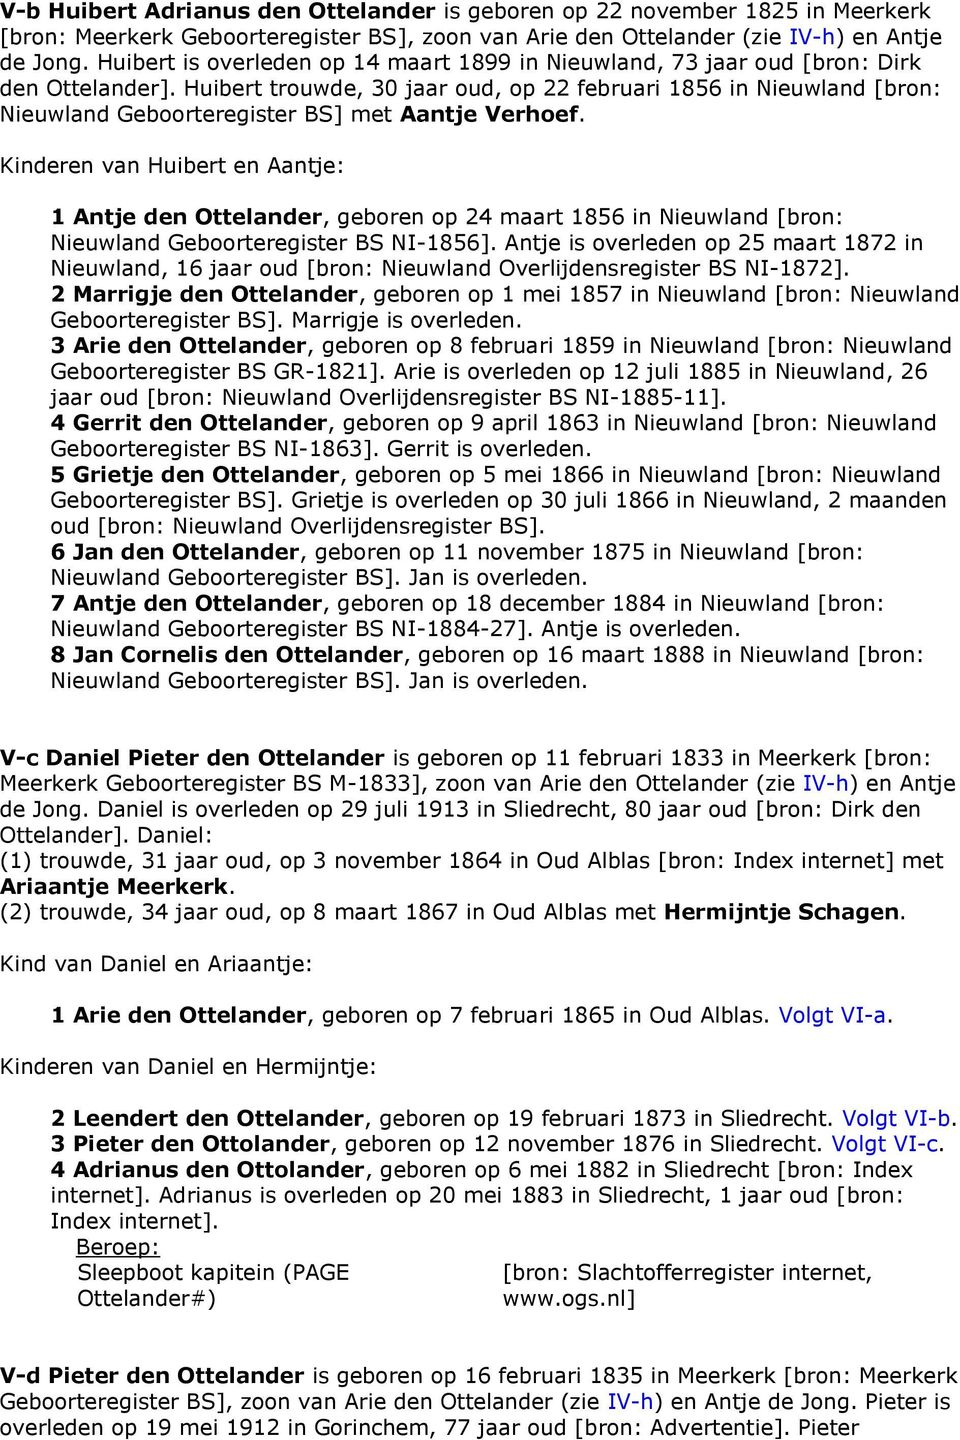 Huibert trouwde, 30 jaar oud, op 22 februari 1856 in Nieuwland [bron: Nieuwland Geboorteregister BS] met Aantje Verhoef.